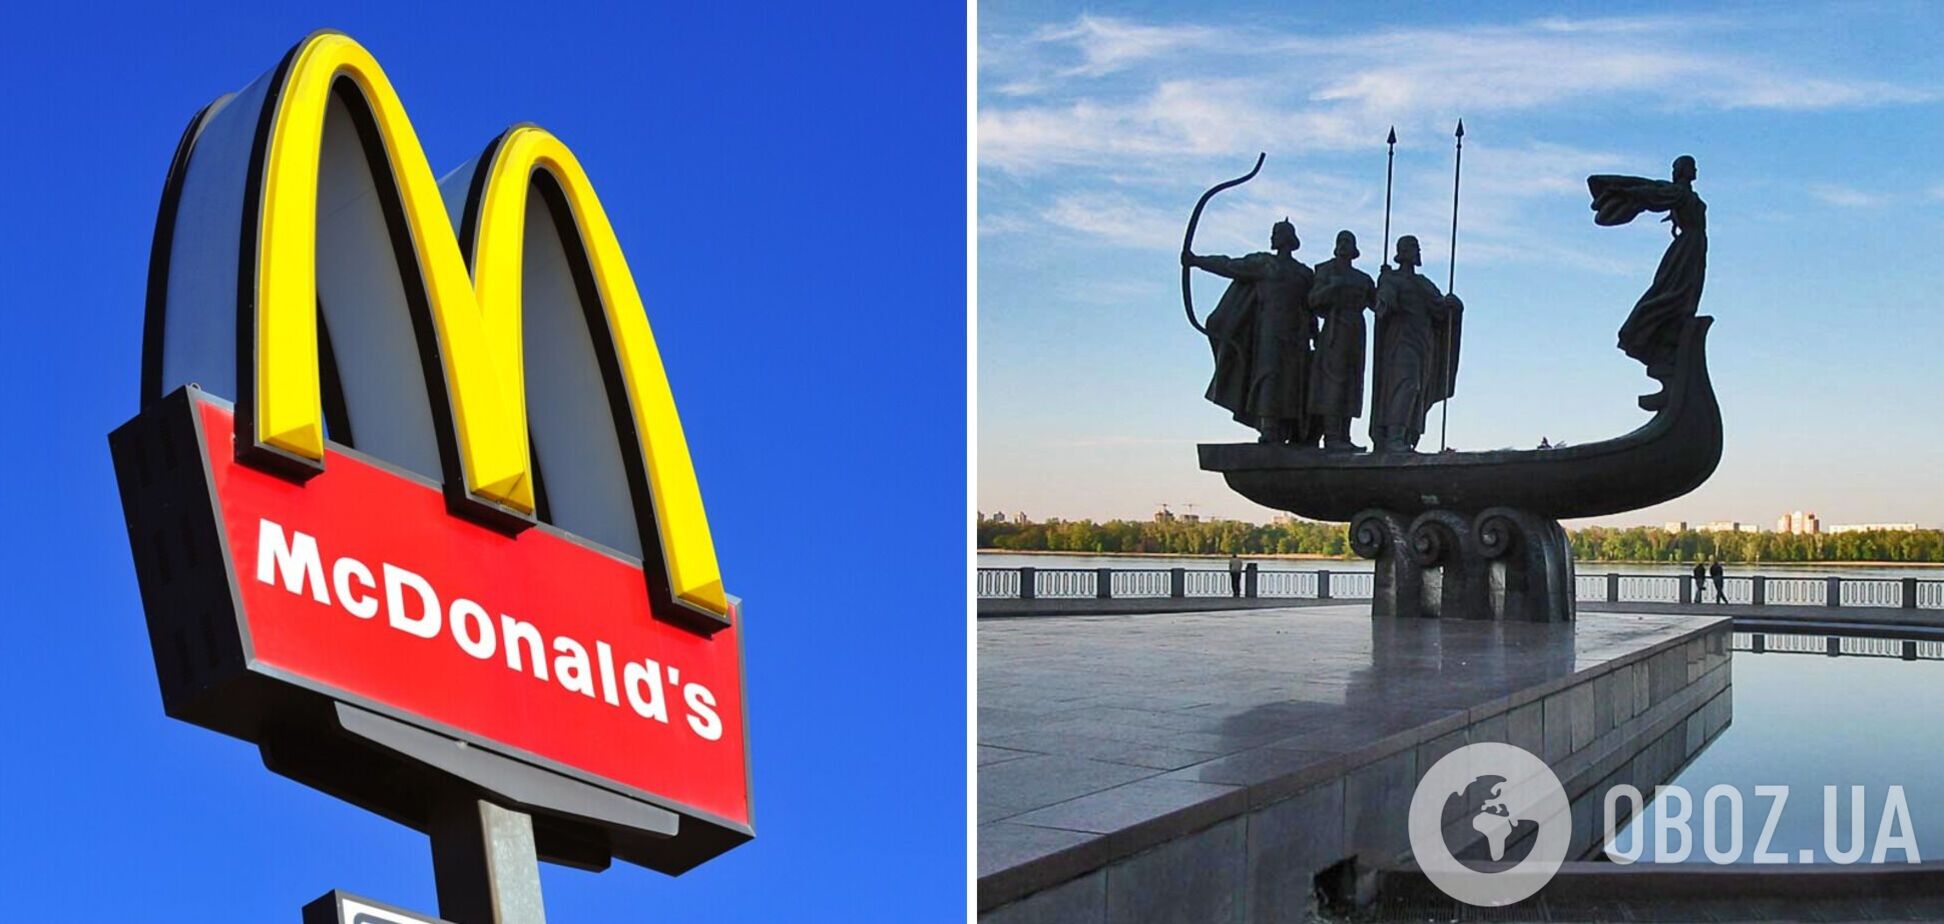 Точной даты открытия McDonald's в Киеве нет